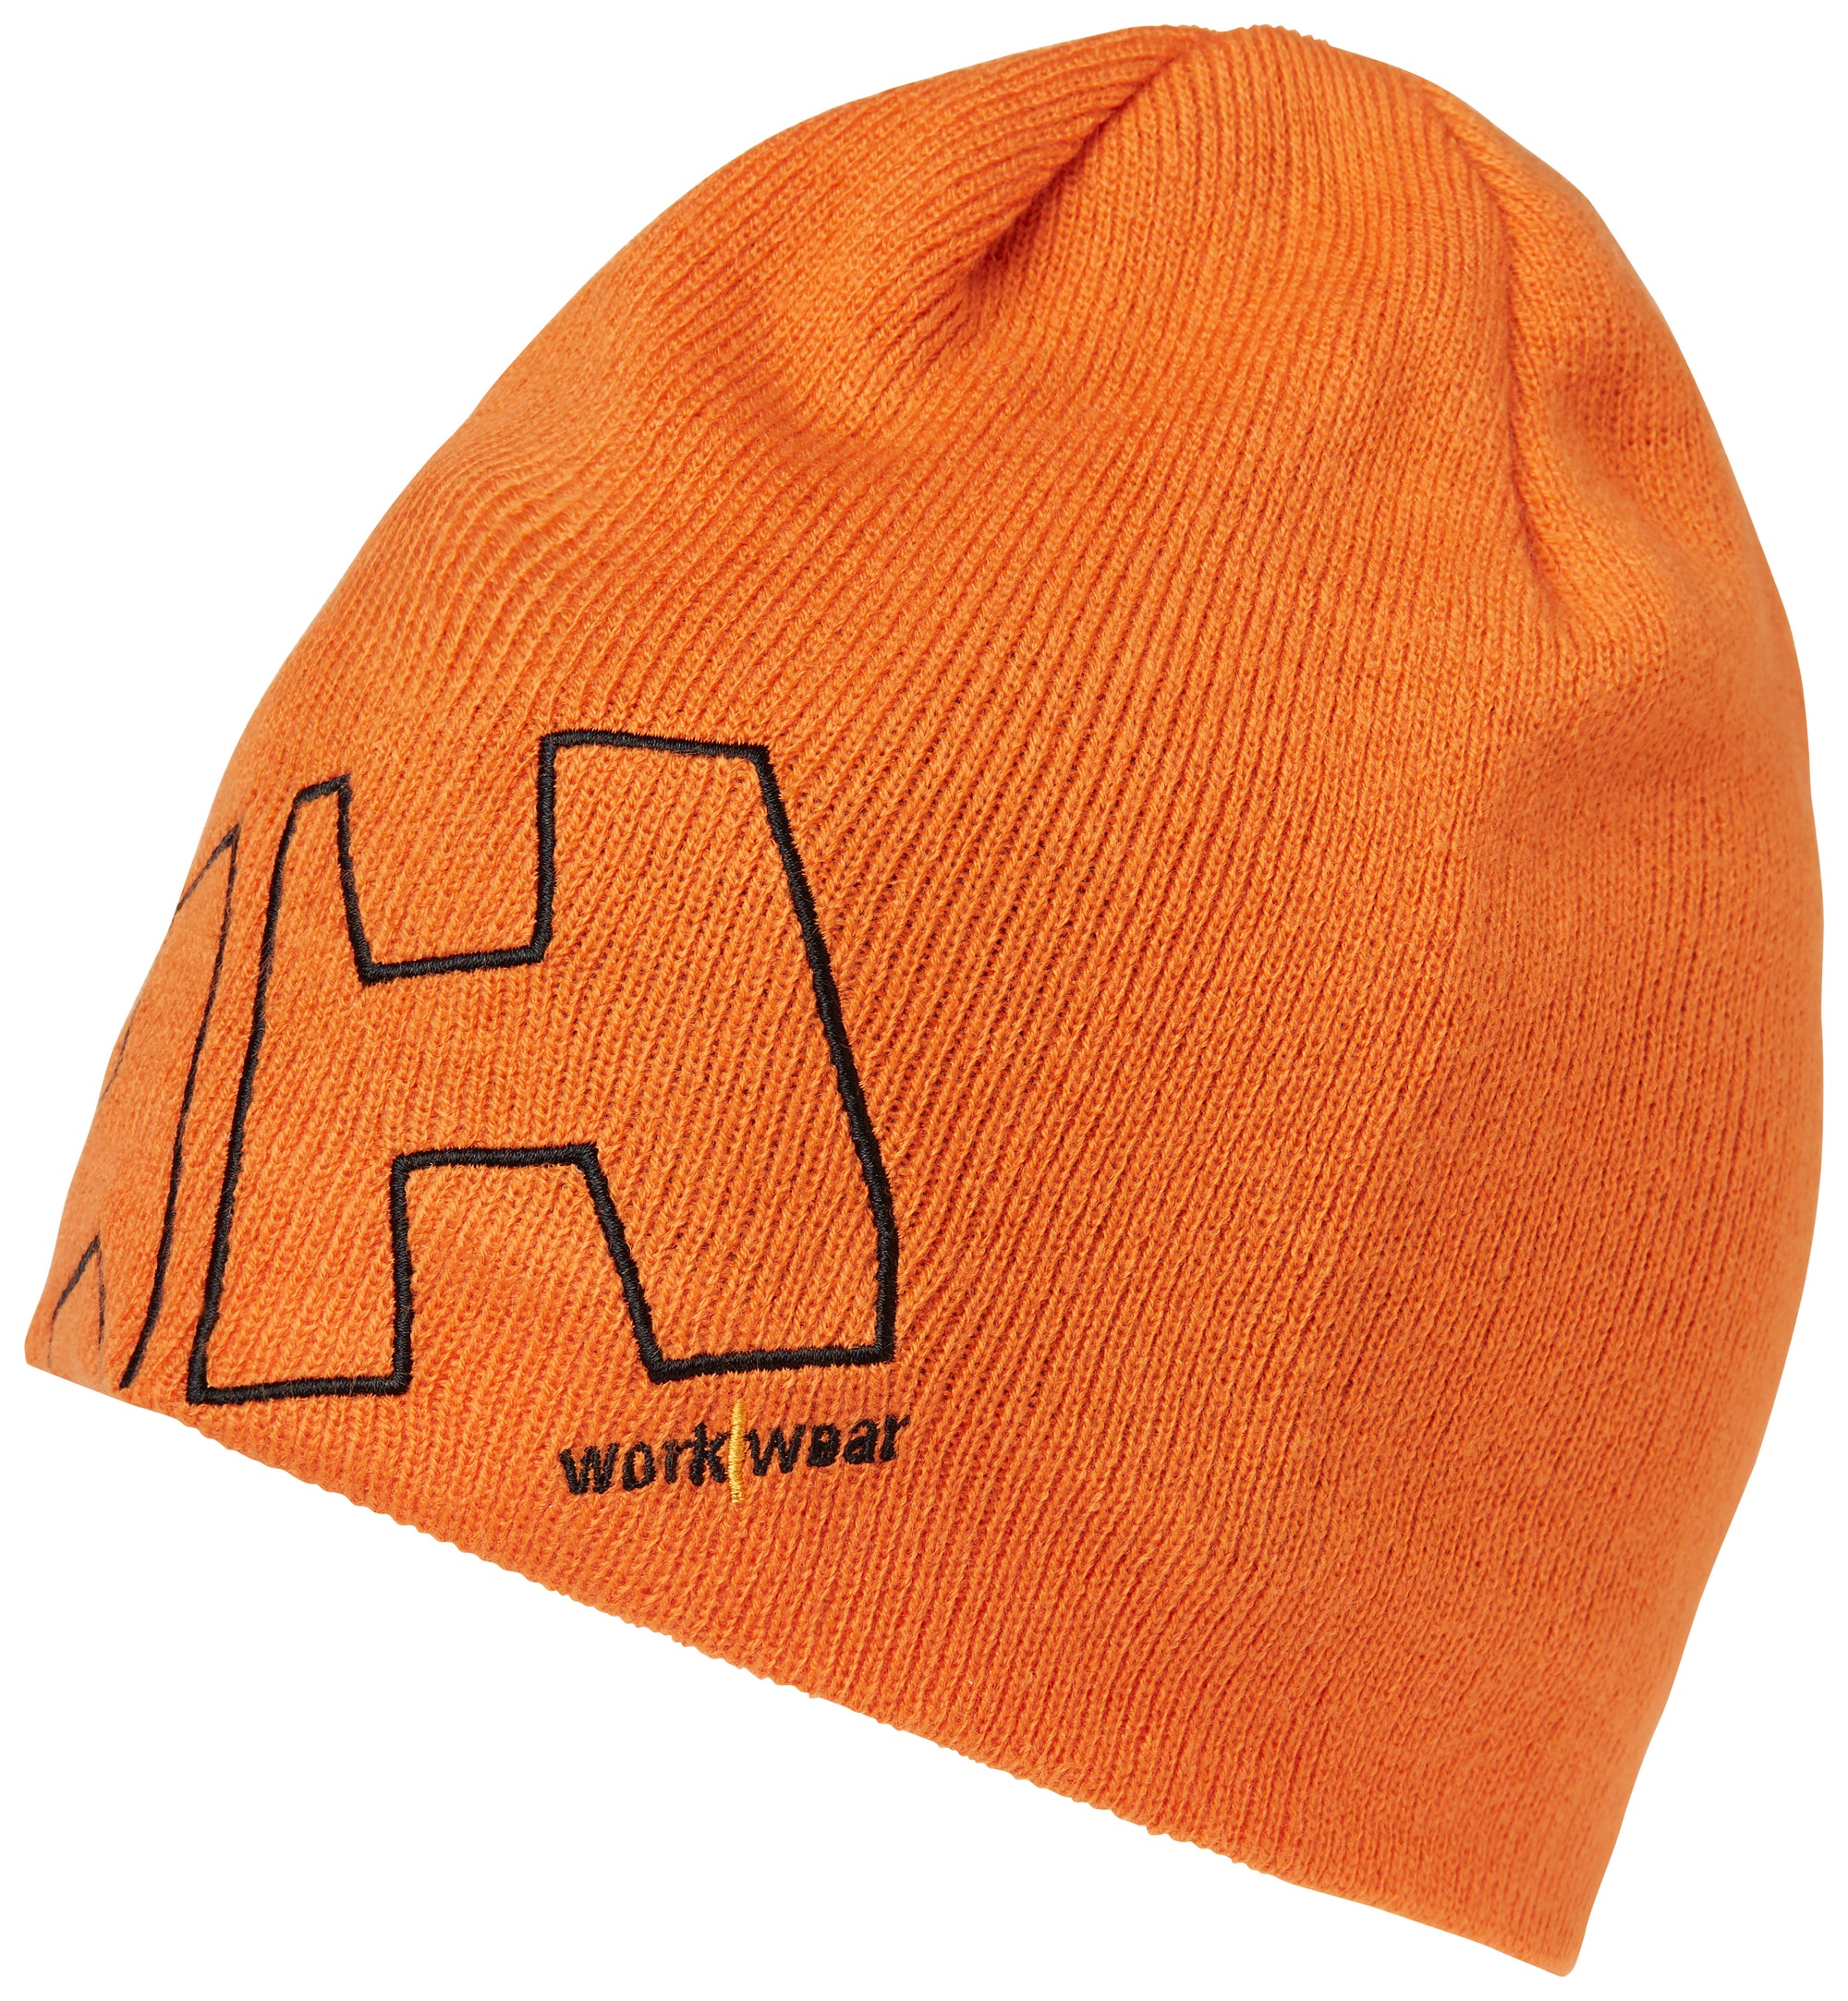 Helly Hansen Workwear Beanie - Work World - Workwear, Work Boots, Safety Gear